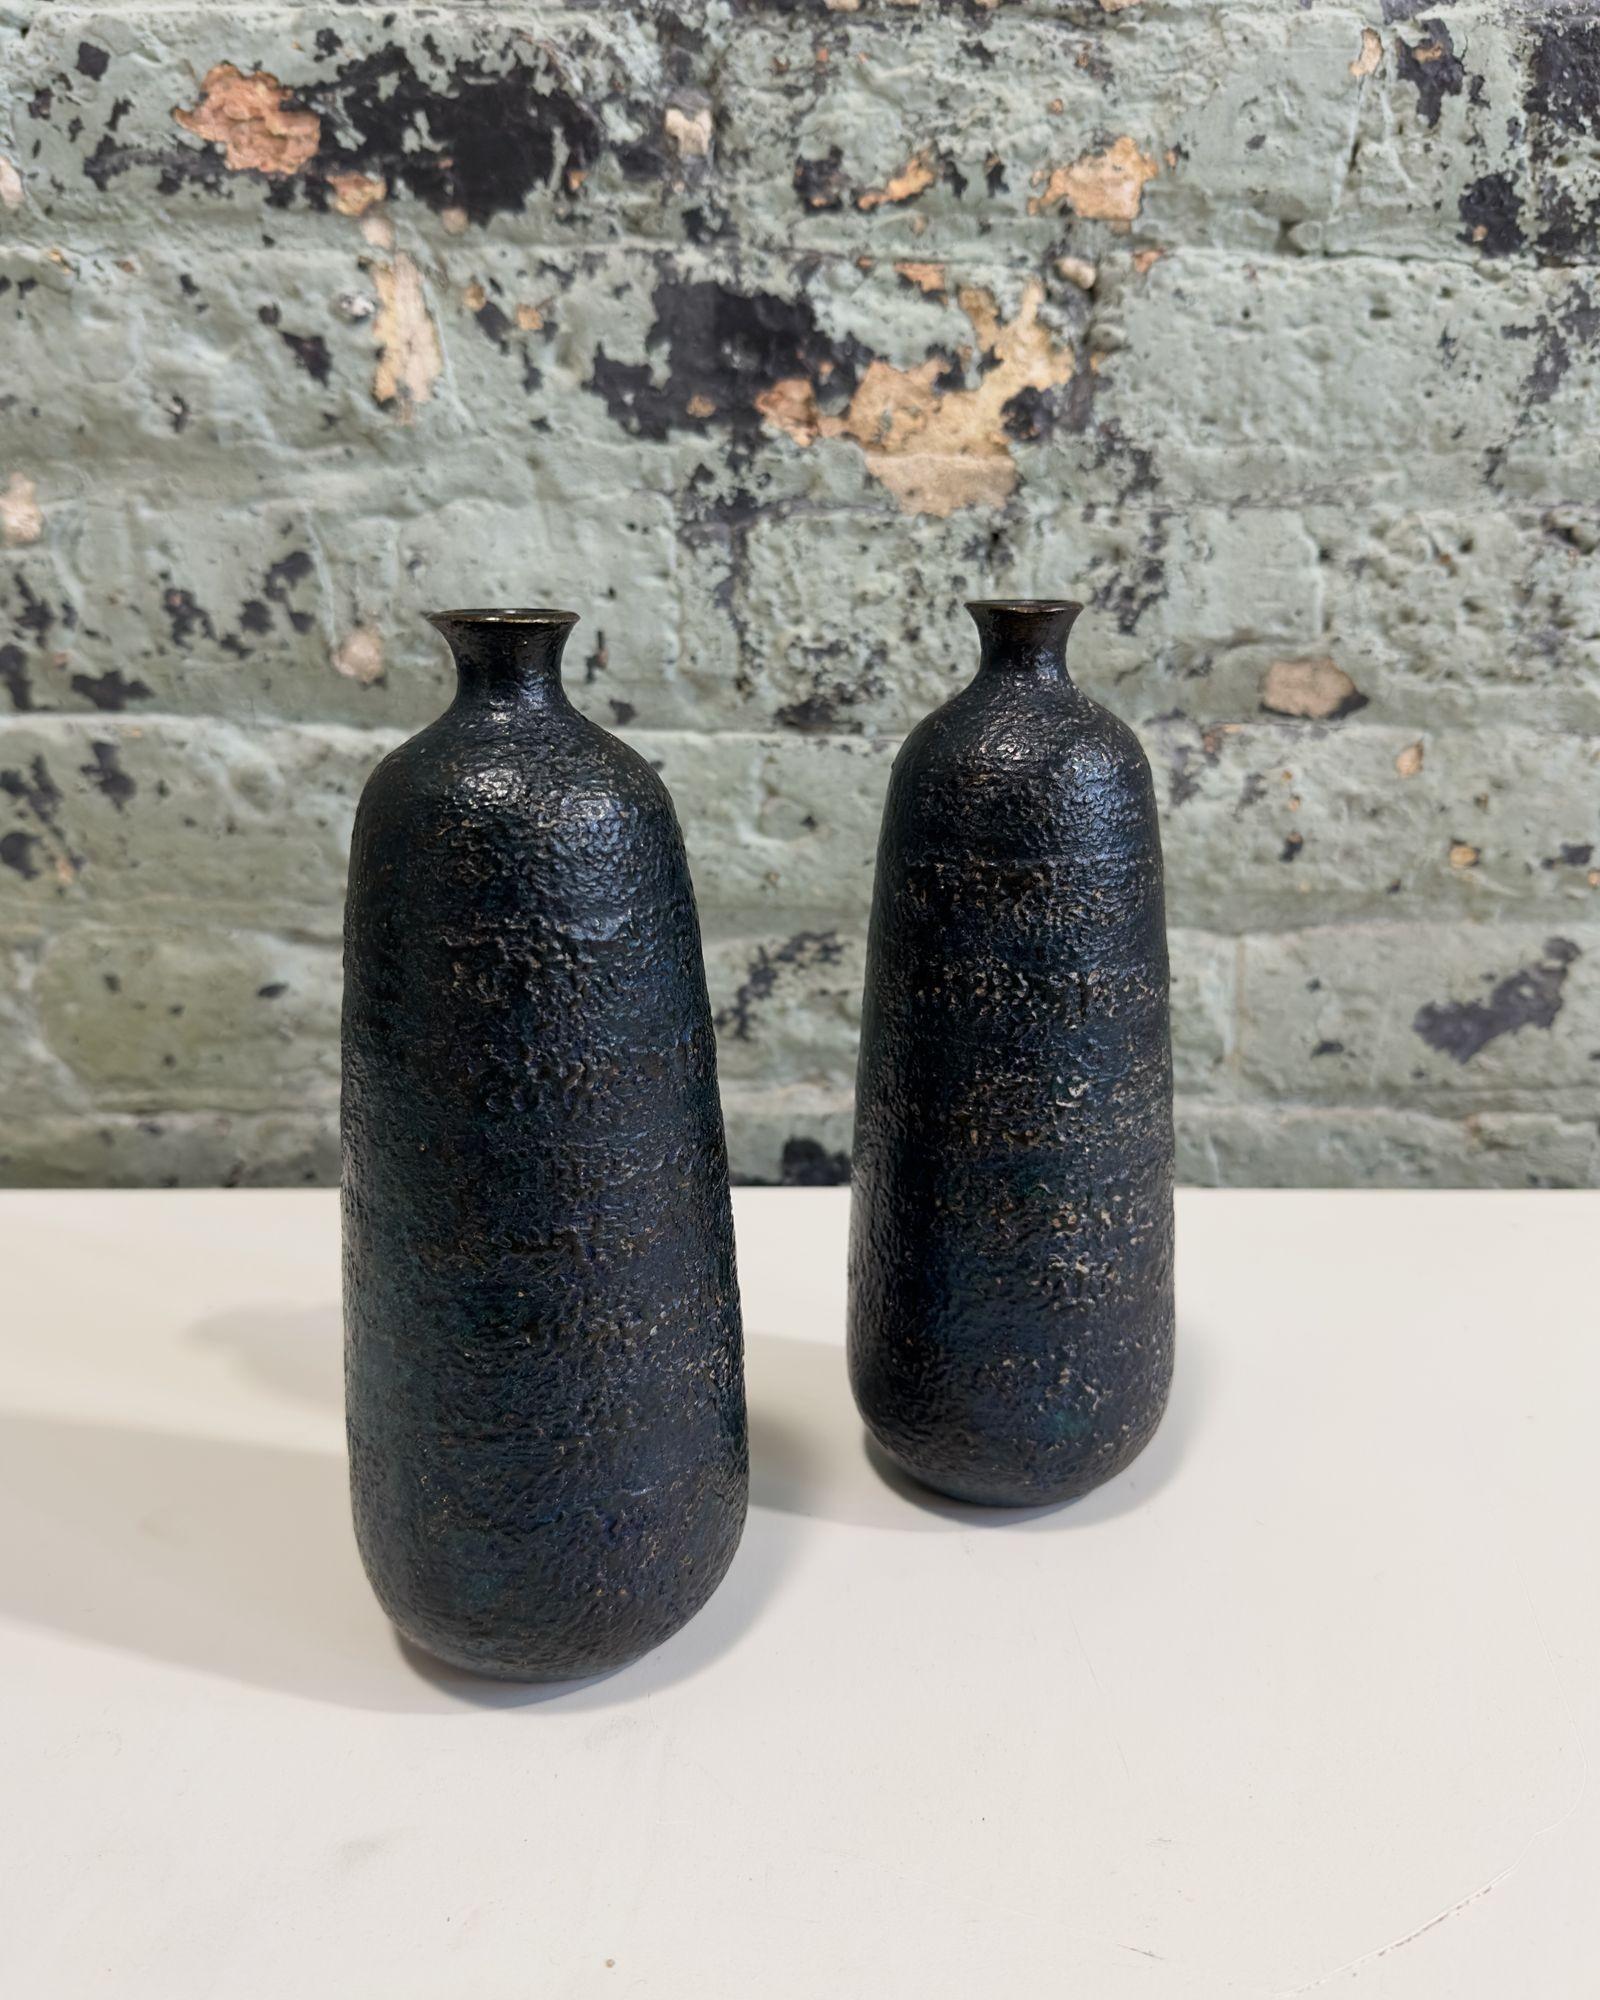 Paire de vases artisanaux japonais en bronze émaillé noir volcanique, Japon, années 1930.
Les vases ont une couleur vibrante de noir avec une teinte verte/bleue. Les vases sont assez lourds, car ils sont en bronze massif. Excellent état.
Les vases